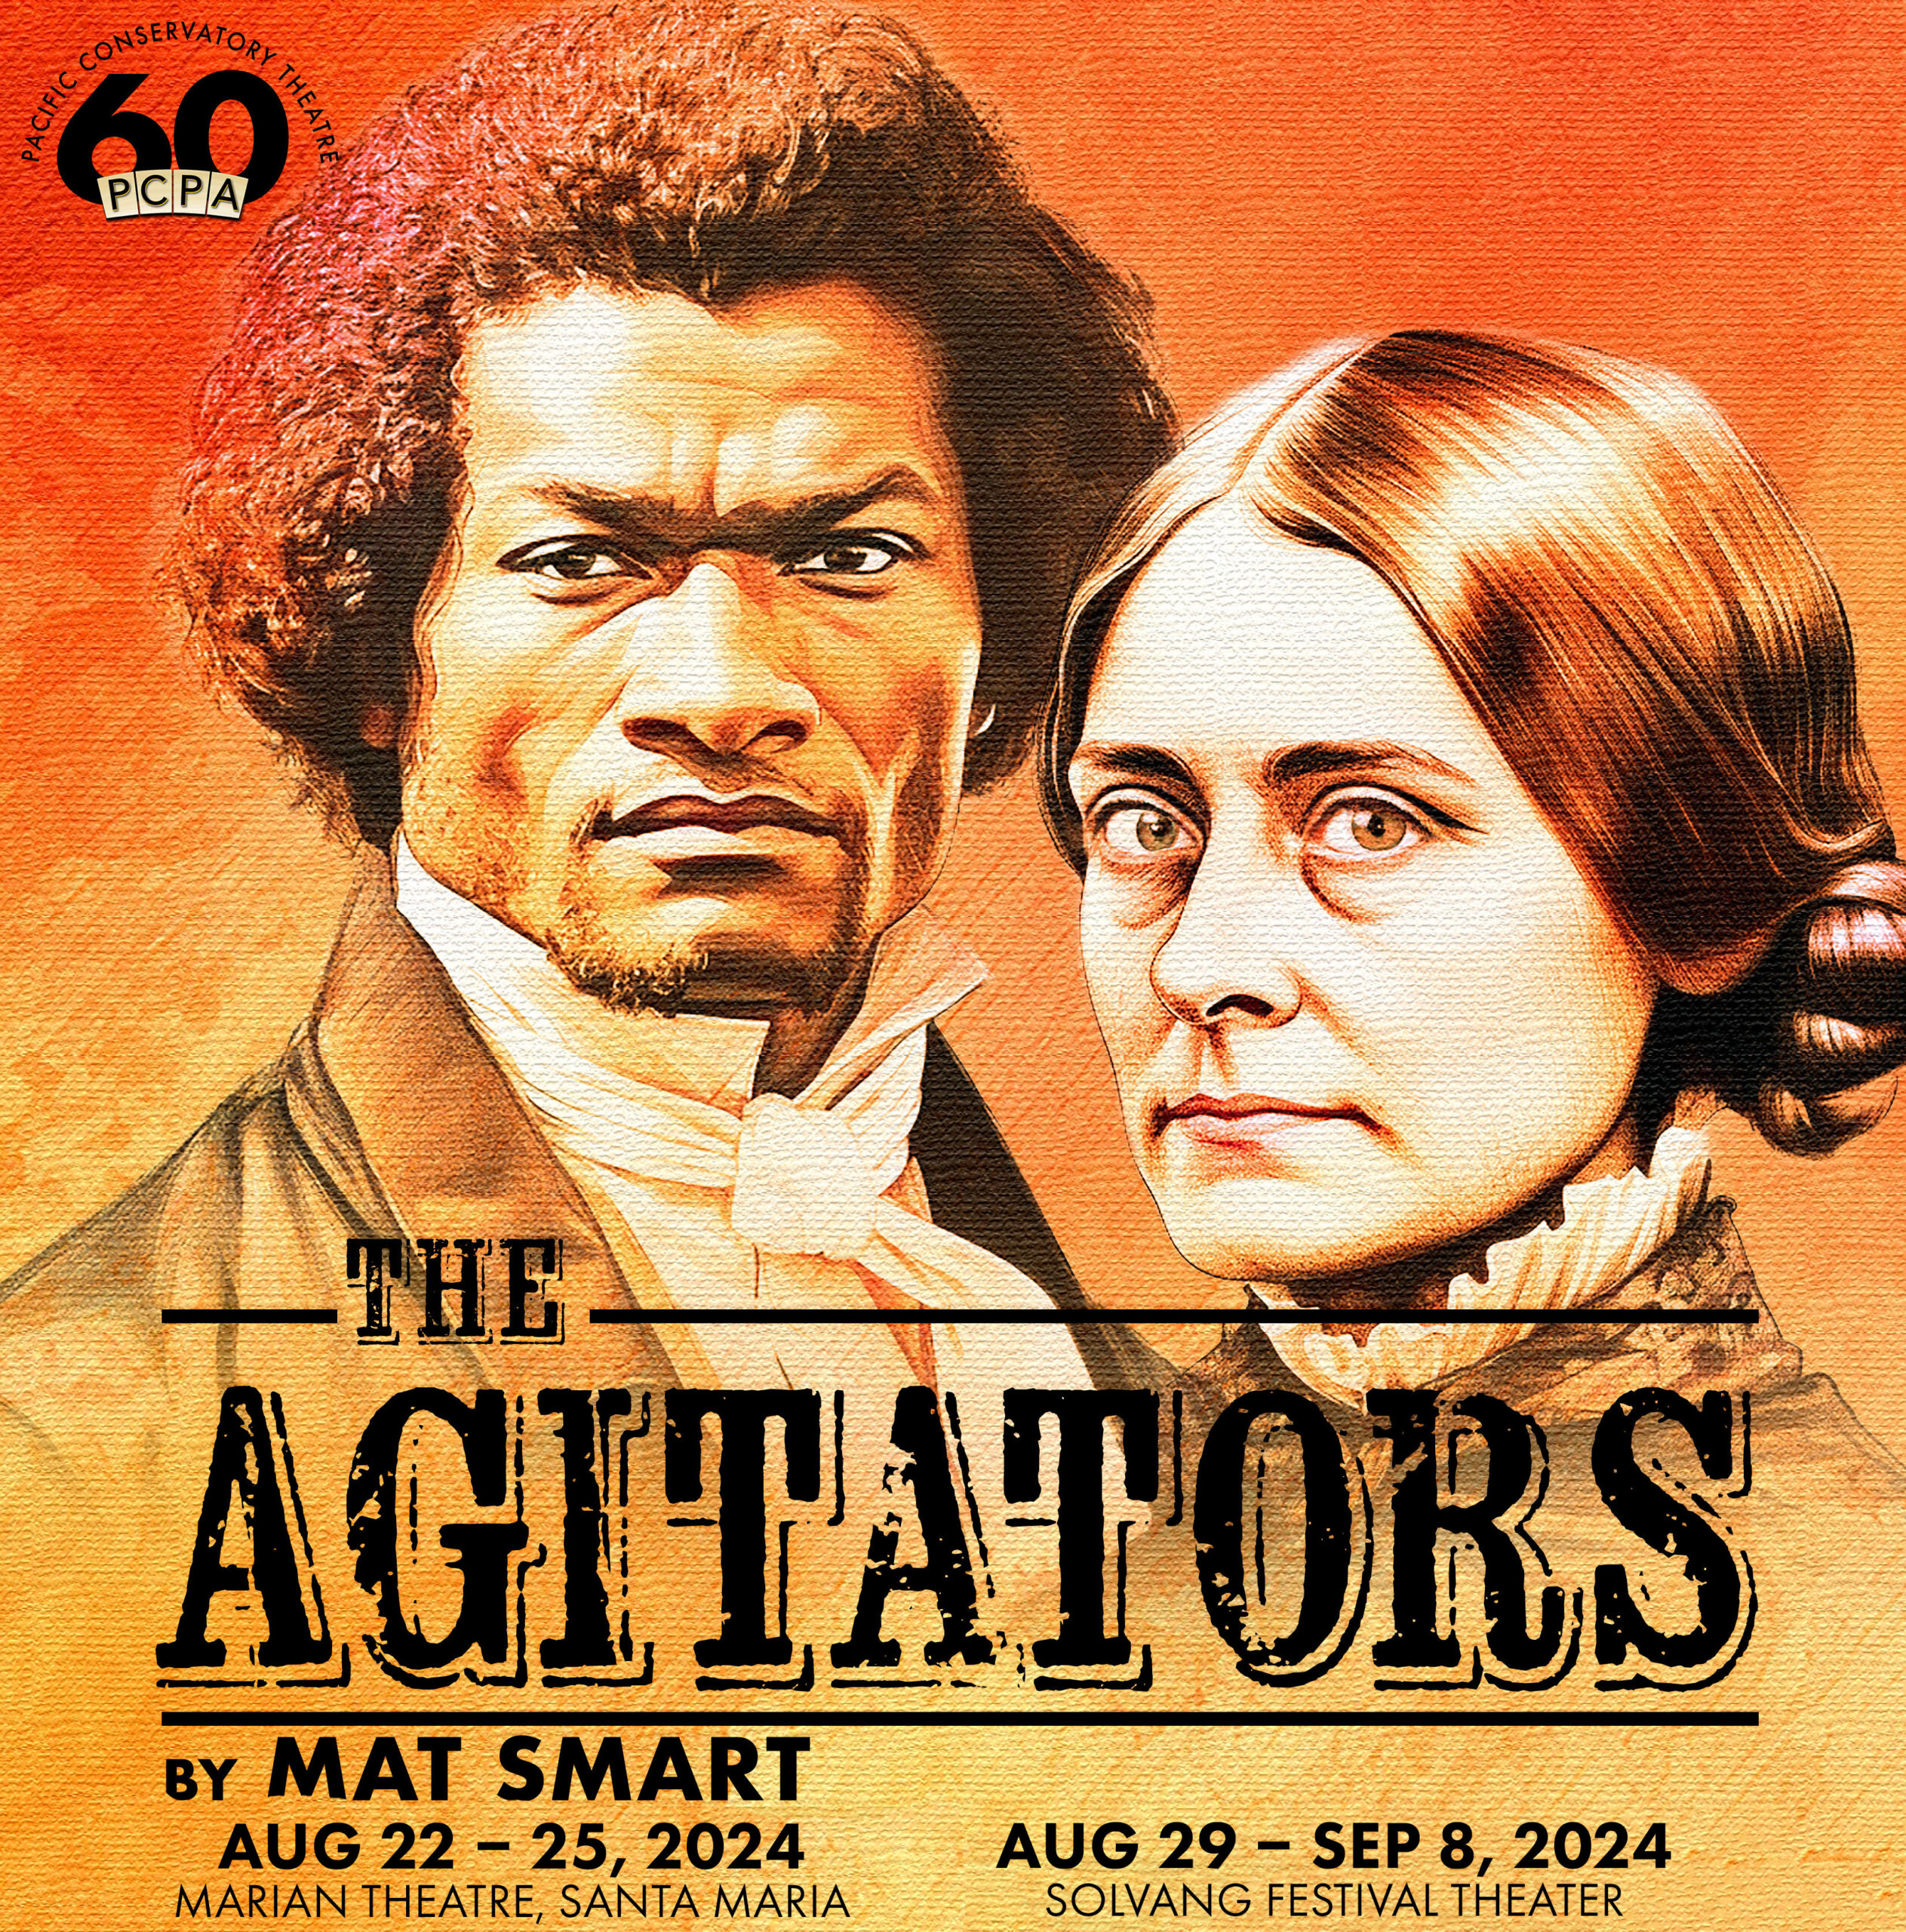 The Agitators